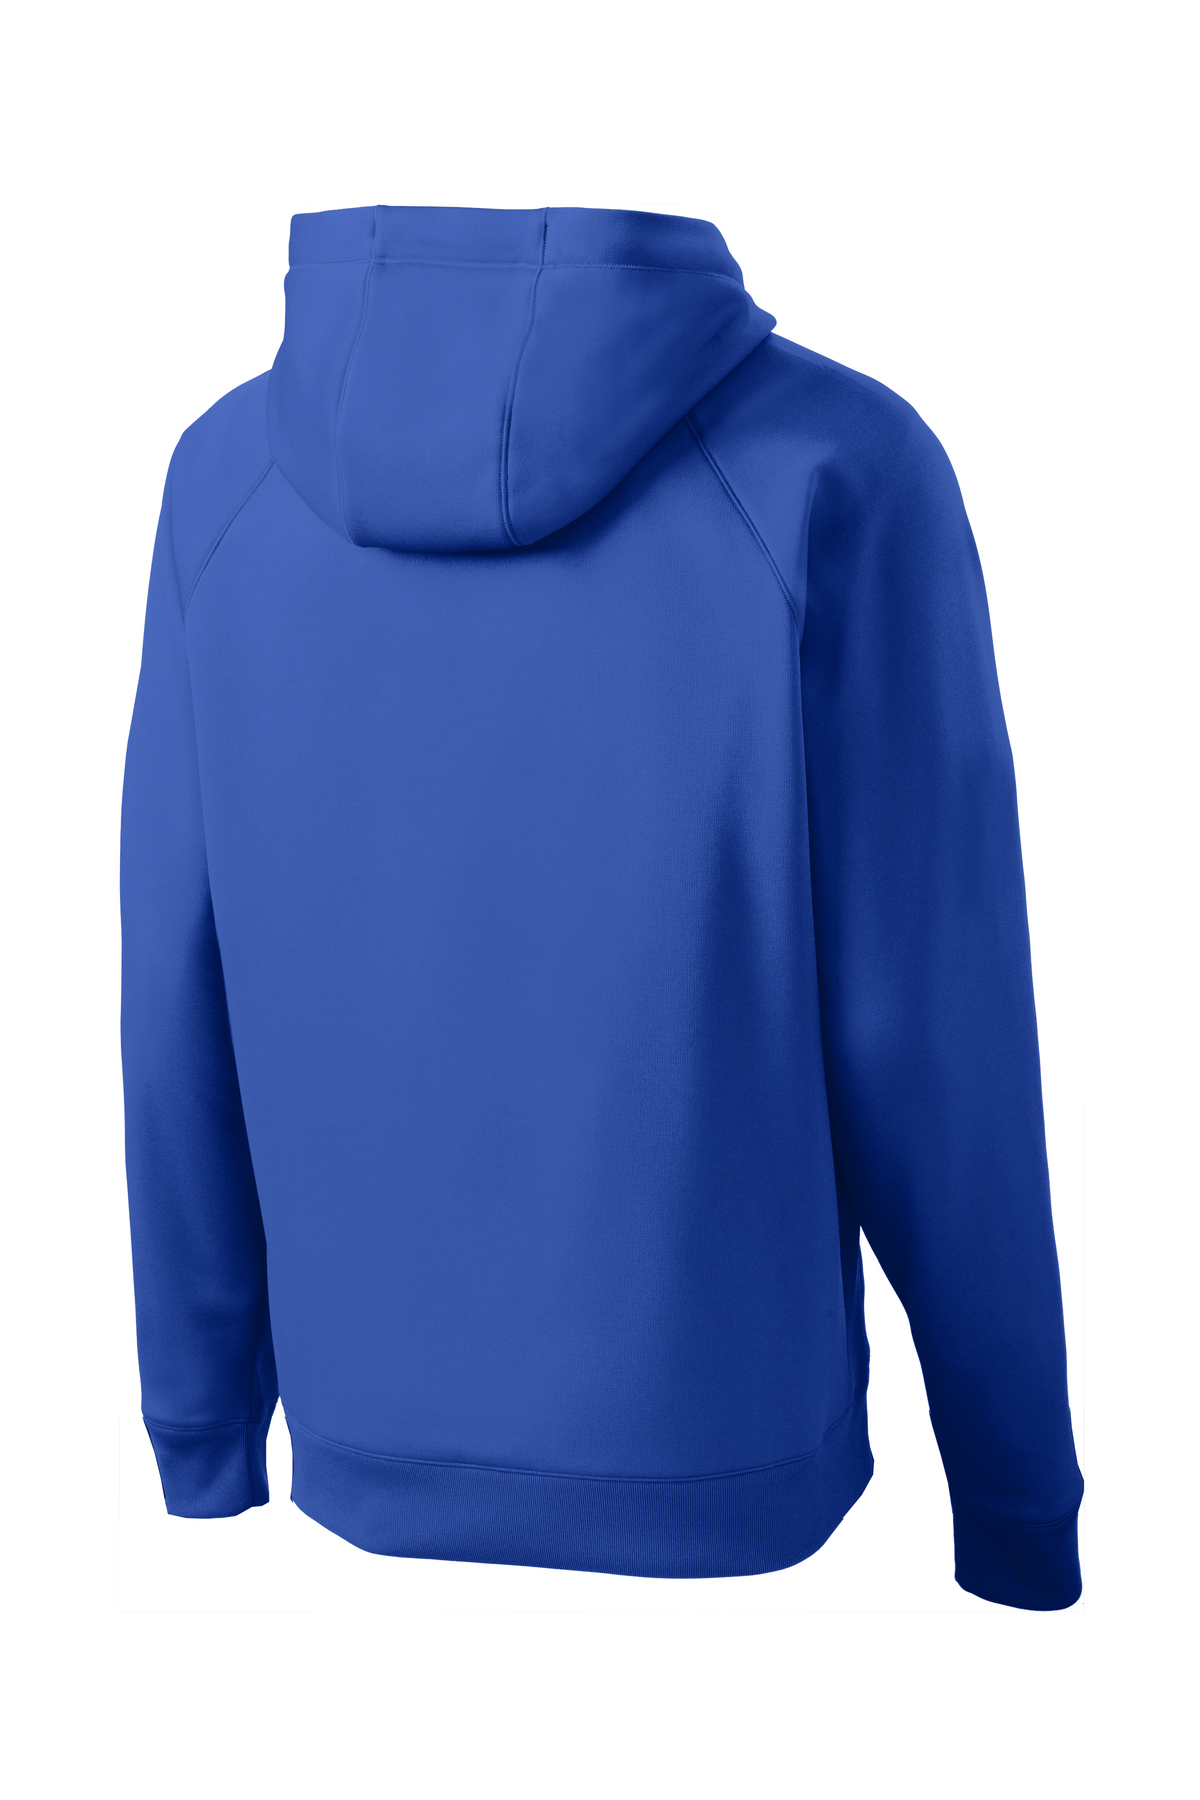 Sport-Tek Tech Fleece Hooded Sweatshirt | Product | Sport-Tek